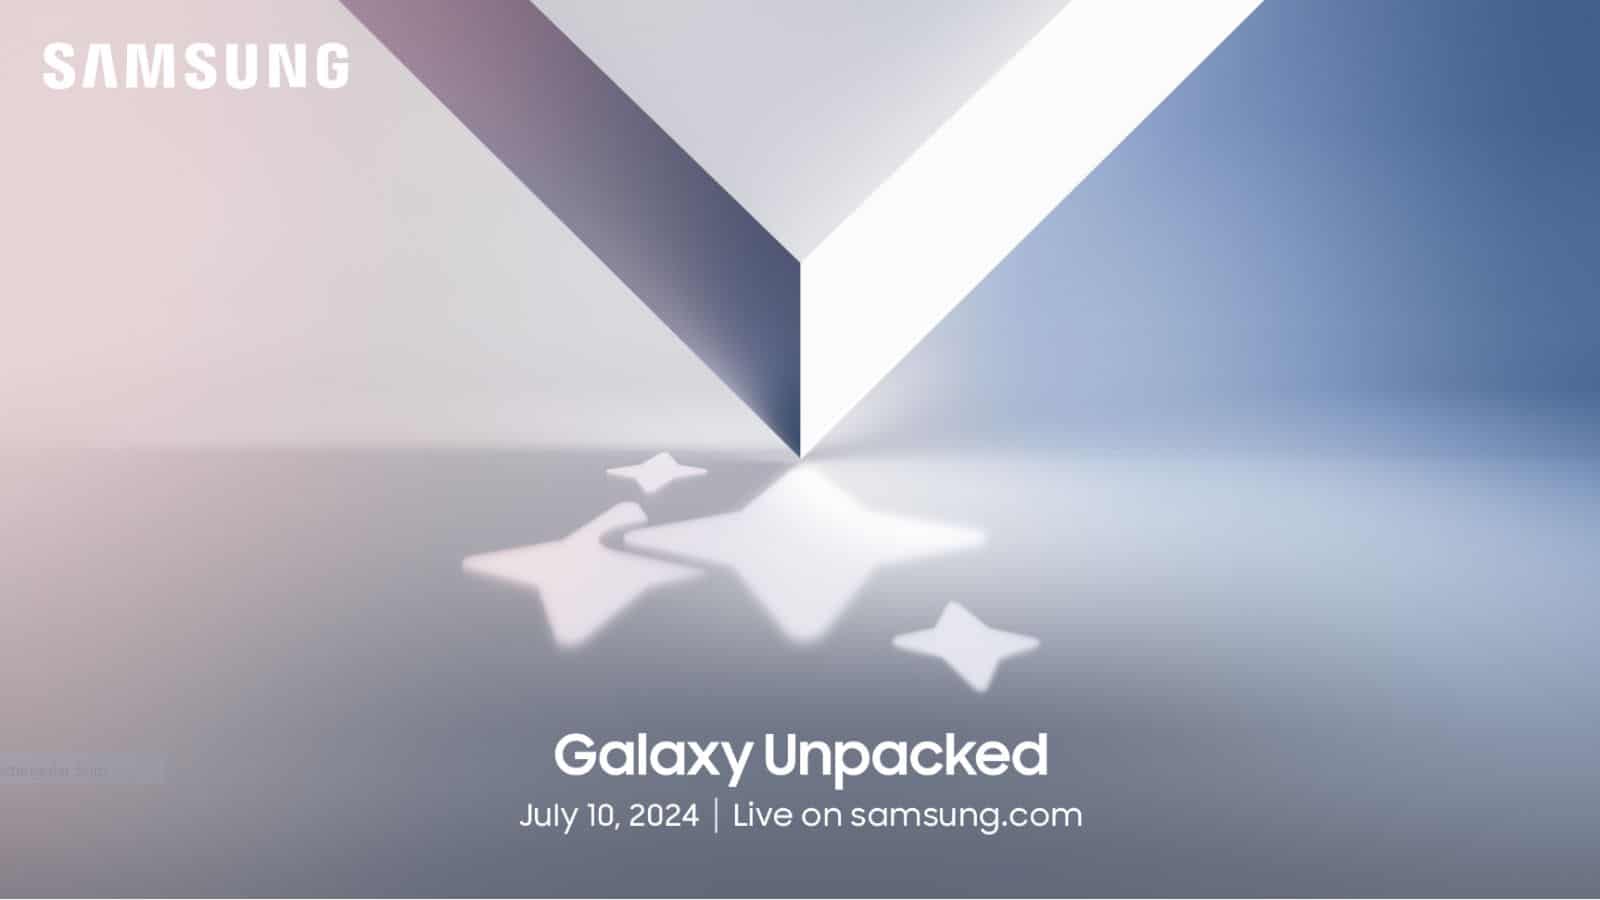 Samsung, è ufficiale l'evento Galaxy Unpacked il 10 luglio a Parigi